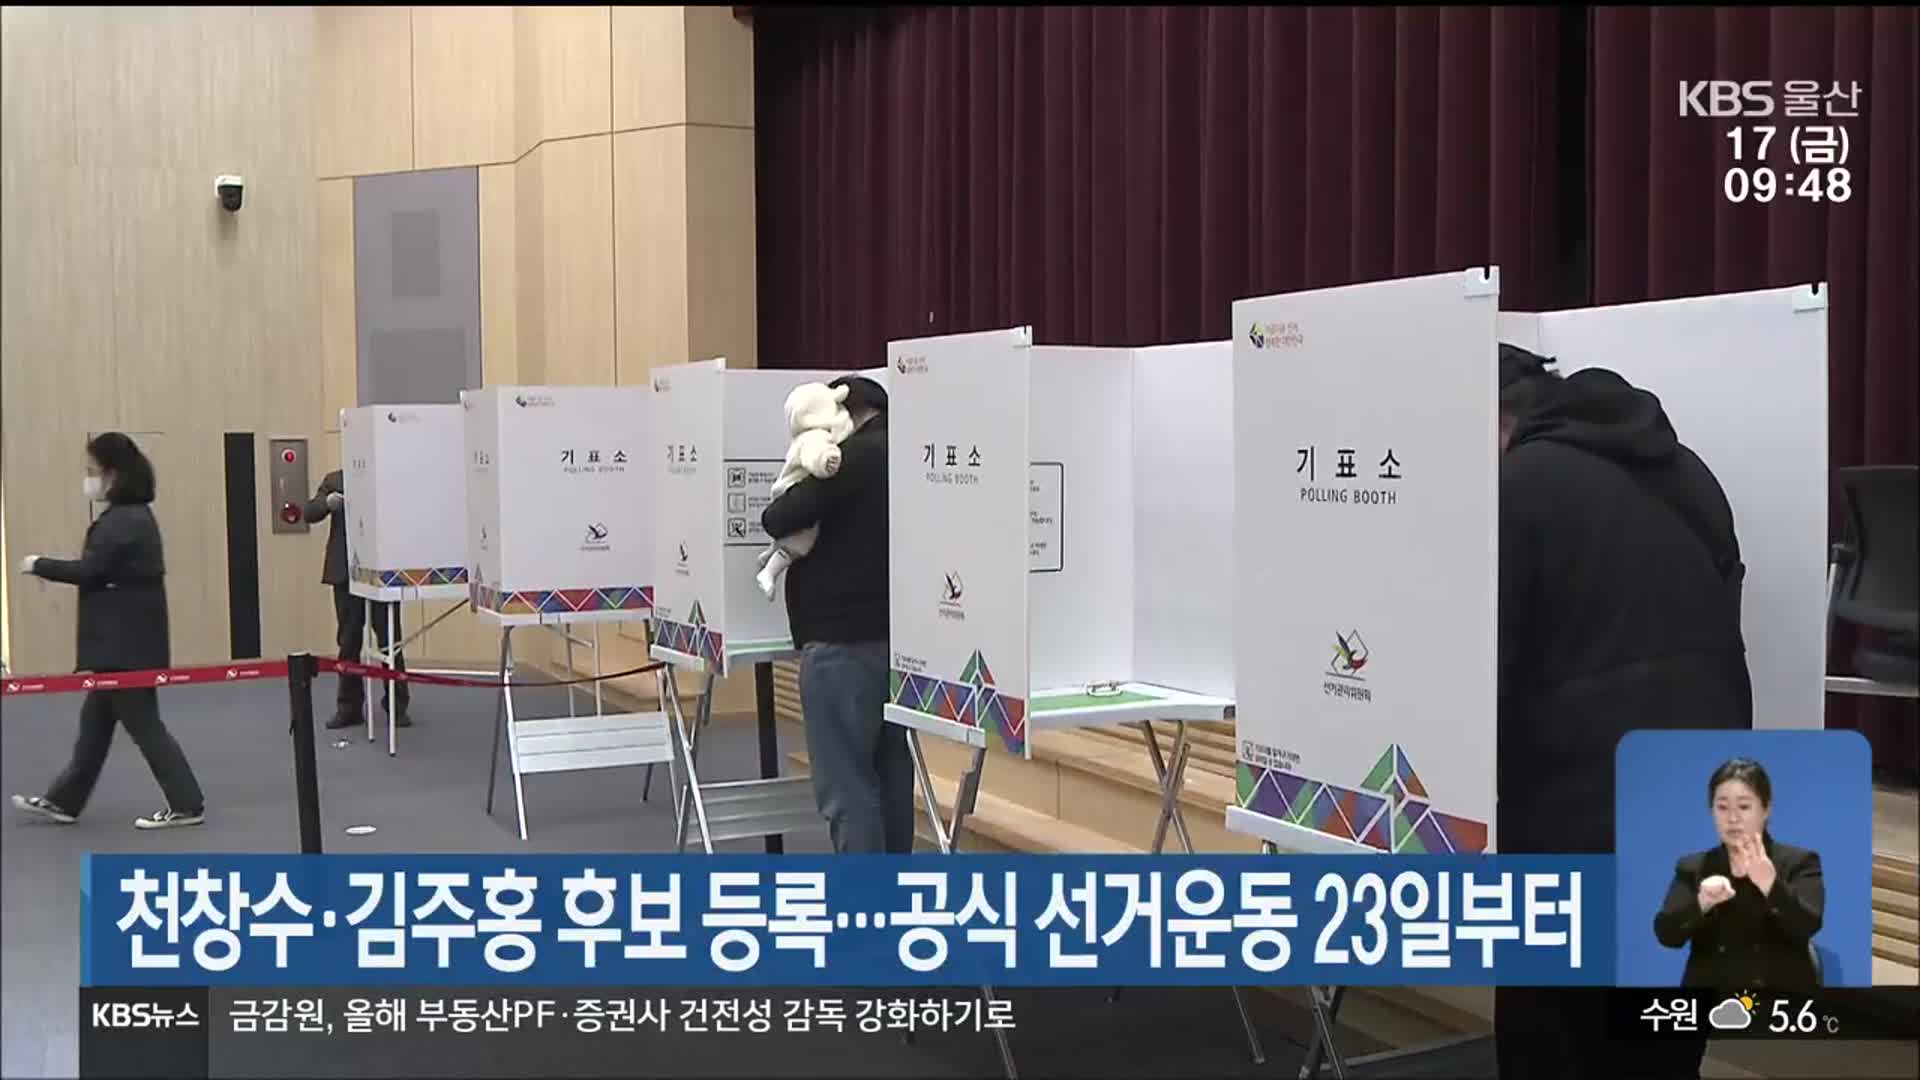 천창수·김주홍 후보 등록…공식 선거운동 23일부터